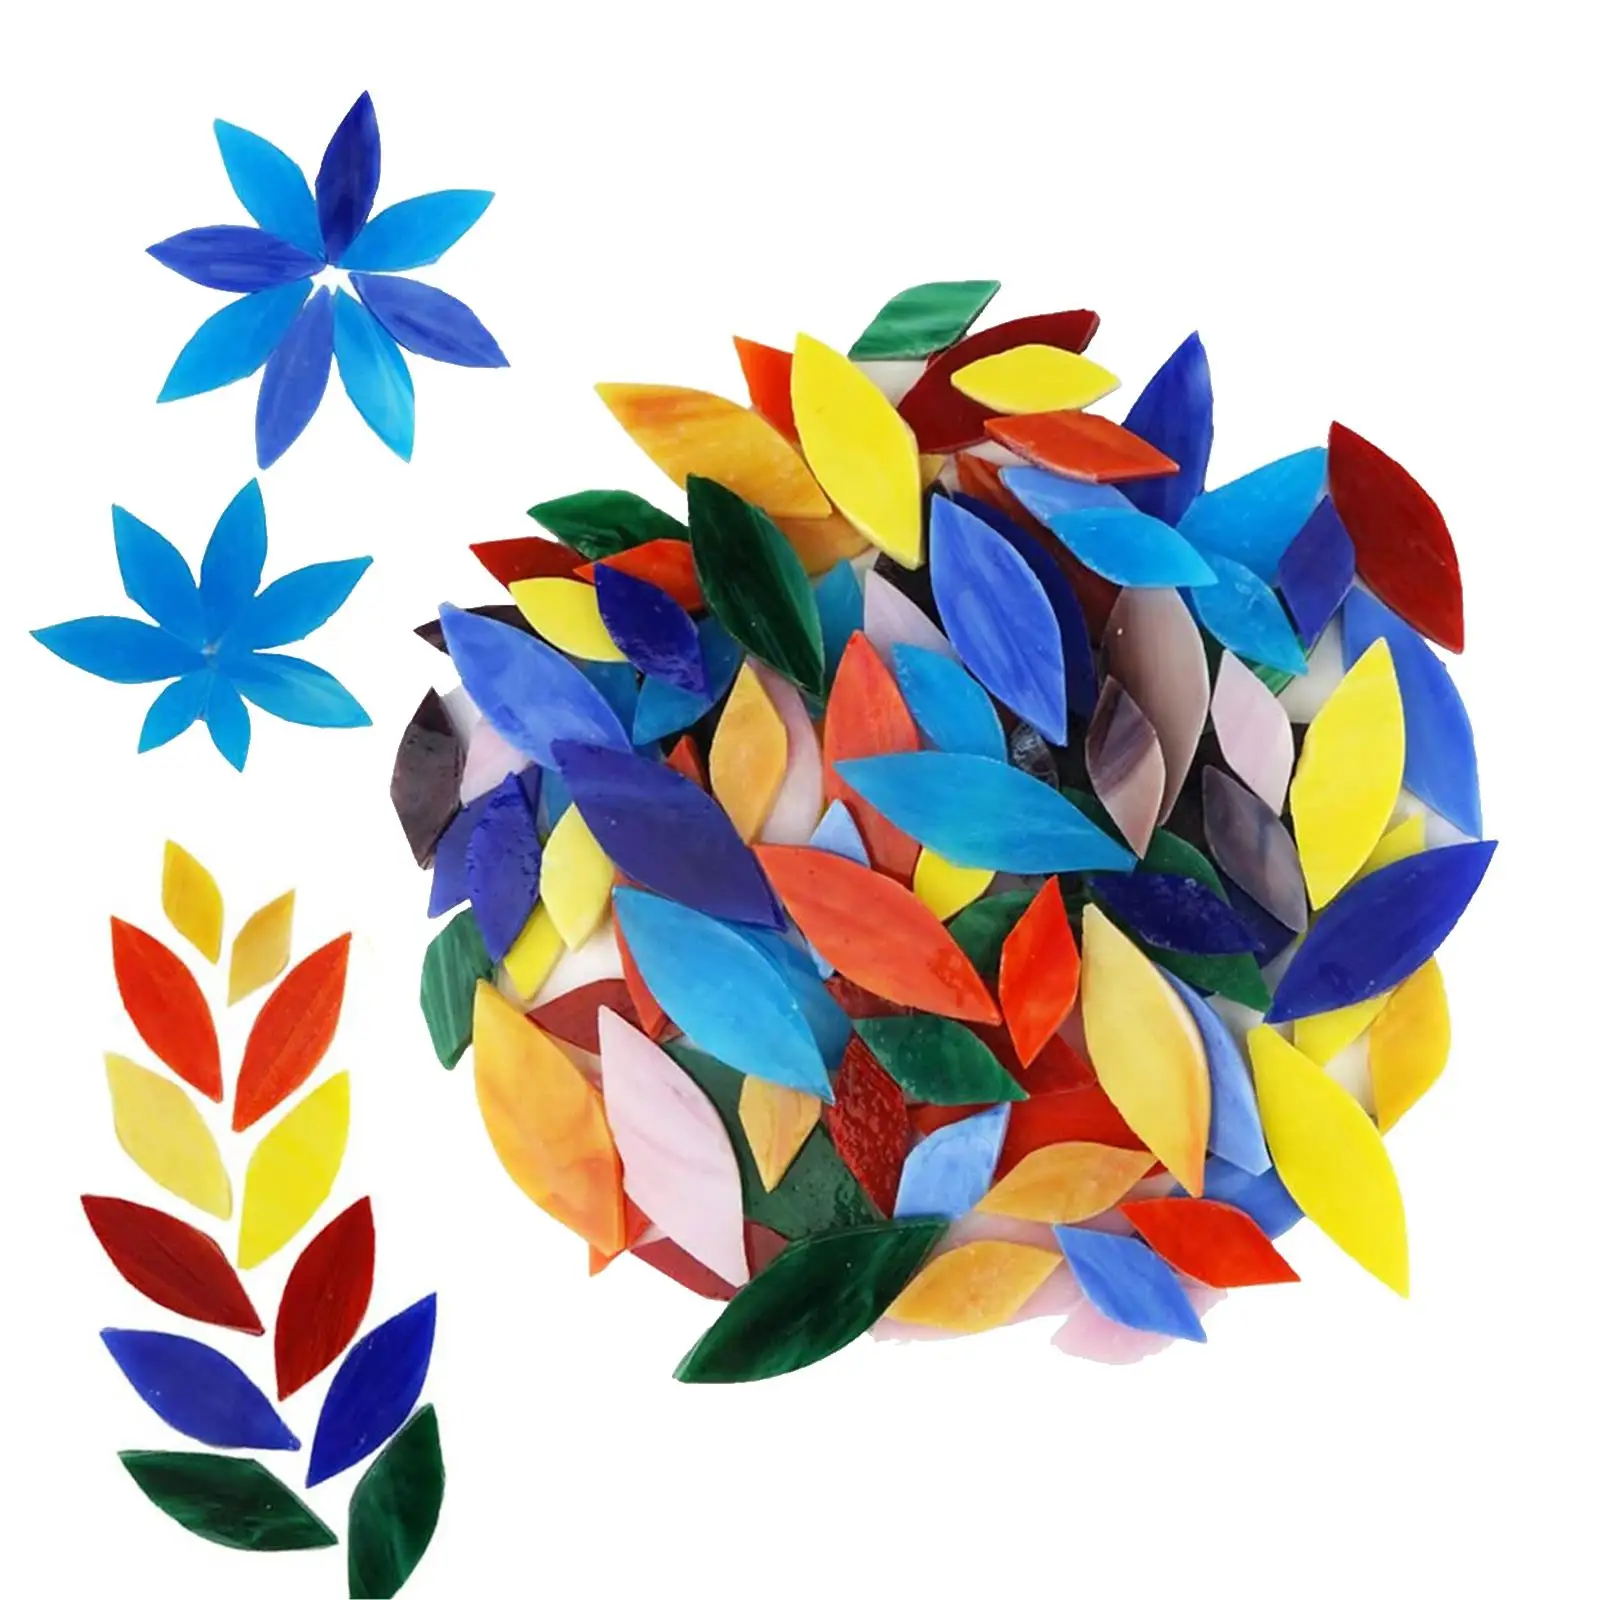 100 Pieces Mixed Colors Petal Mosaic Tiles Art Crafts Garden